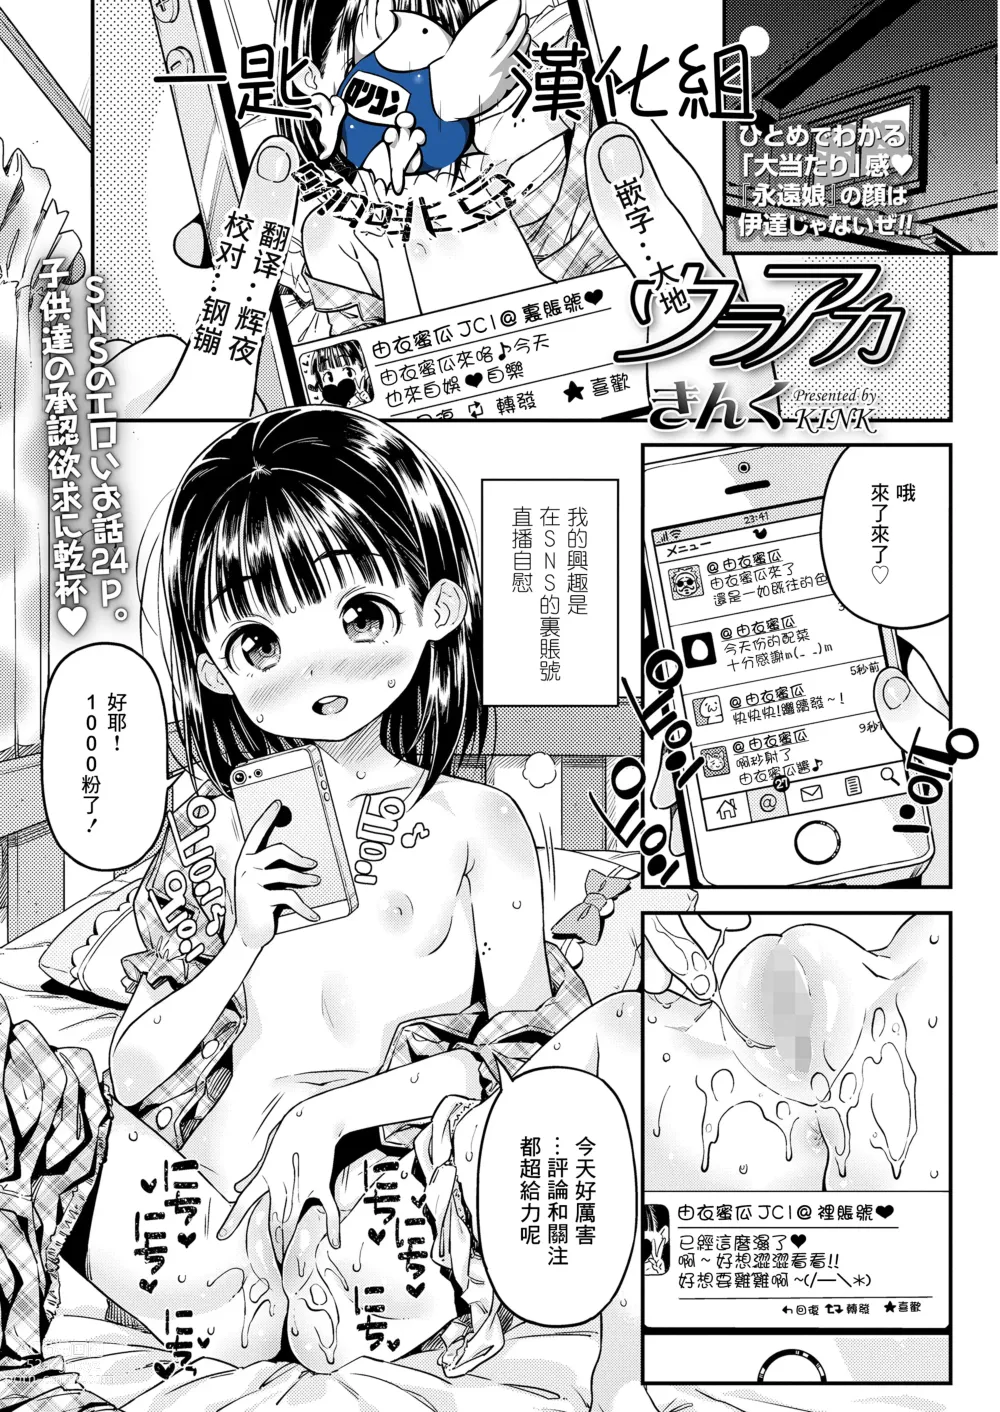 Page 1 of manga Ura Aca